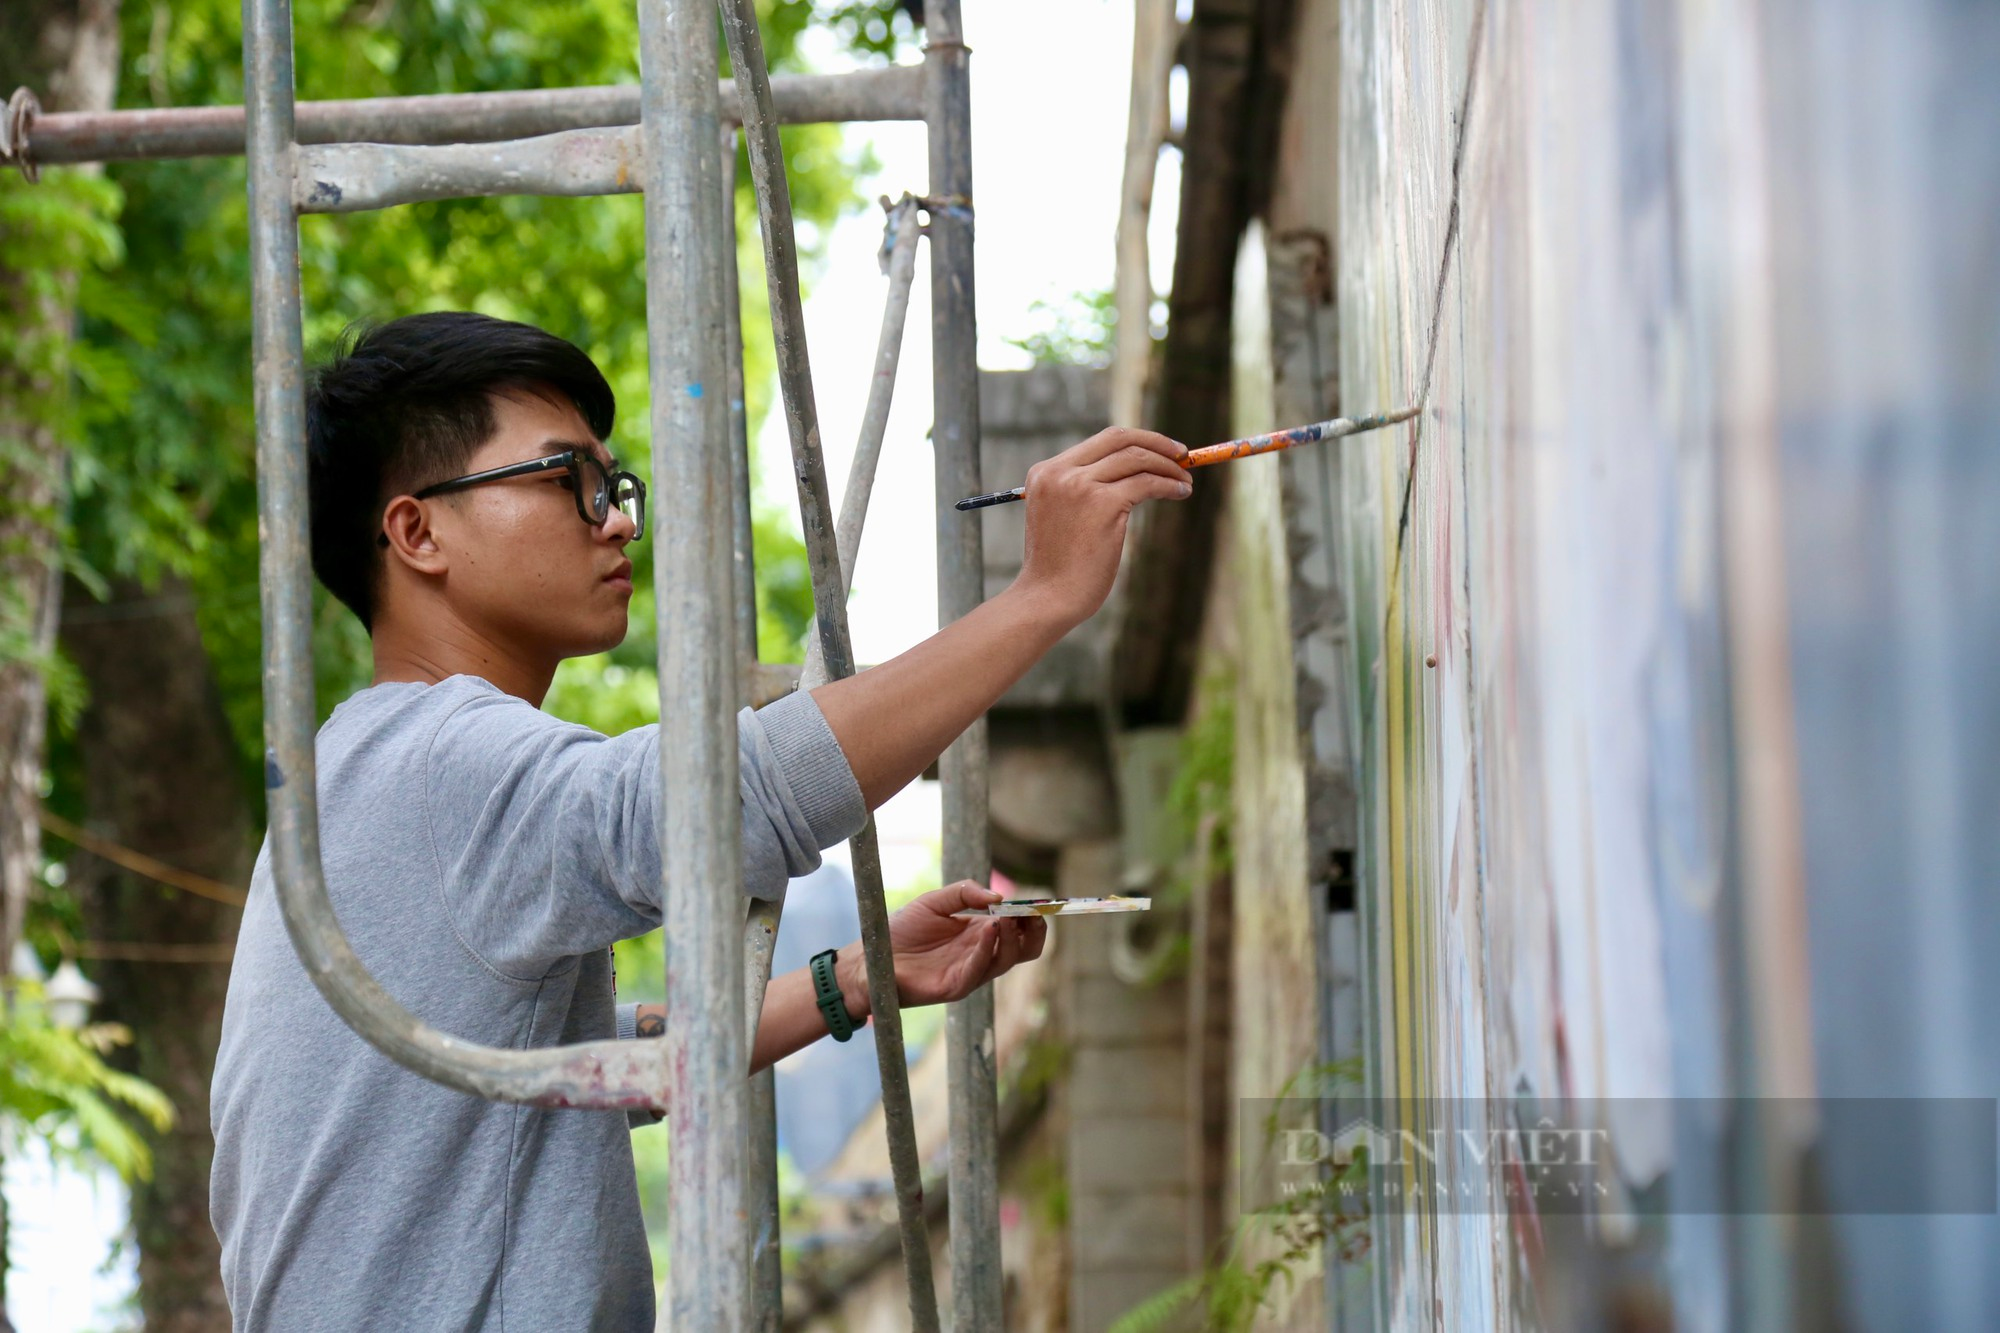 Họa sĩ đang vẽ lại phố bích họa Phùng Hưng sau khi xuống cấp - Ảnh 6.